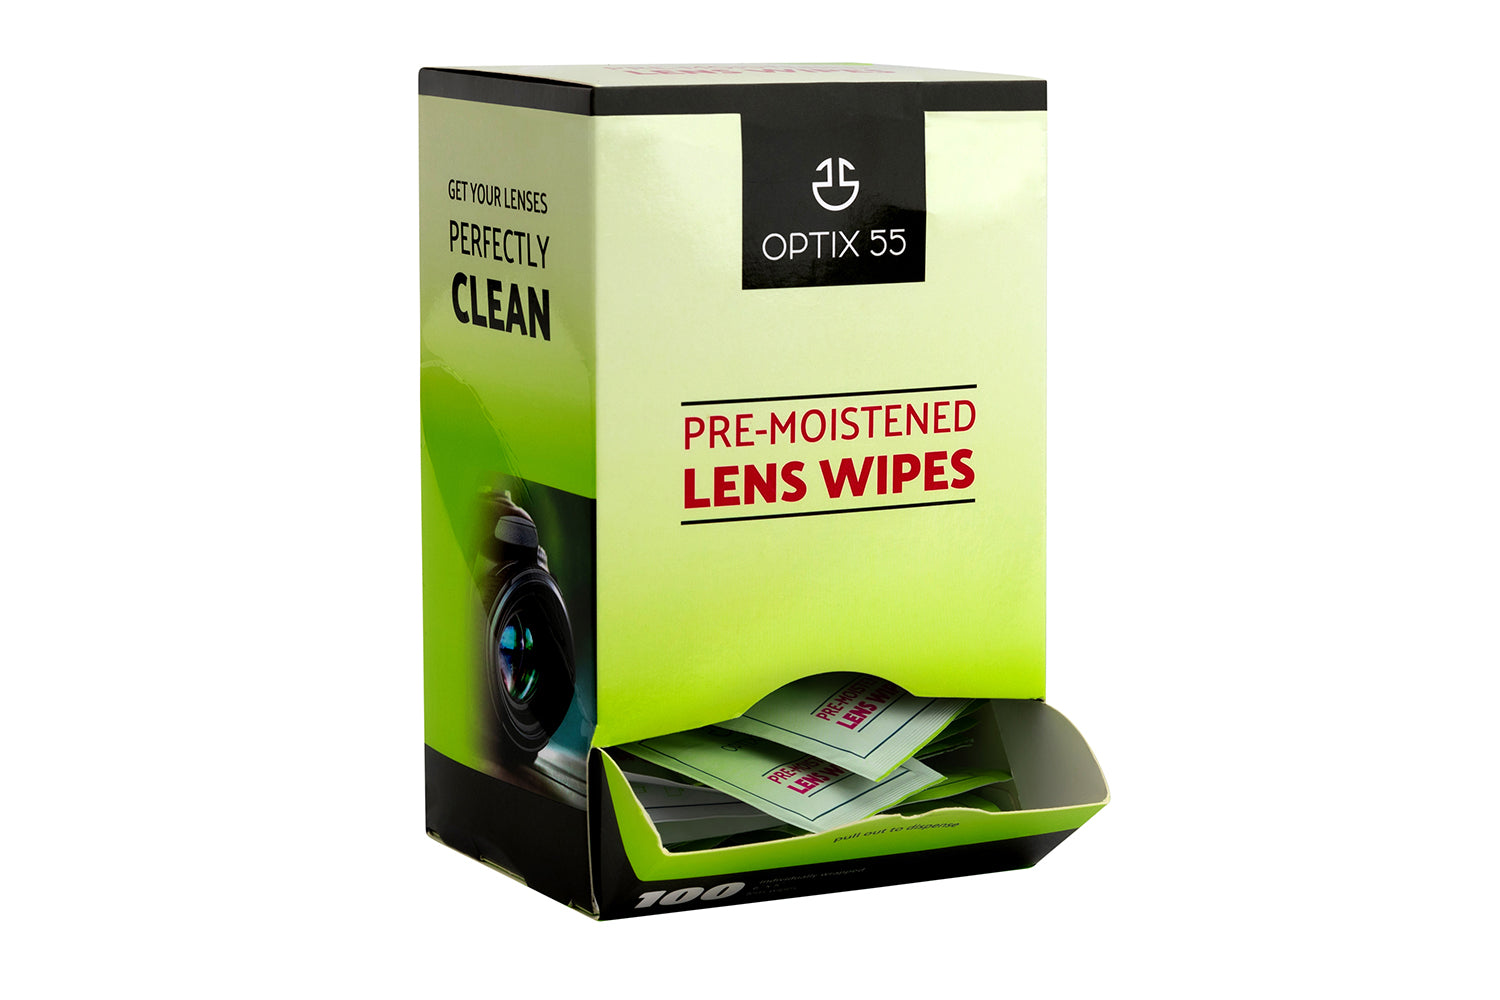 Optiplus Eyeglass Lens Wipes 252 Wipes